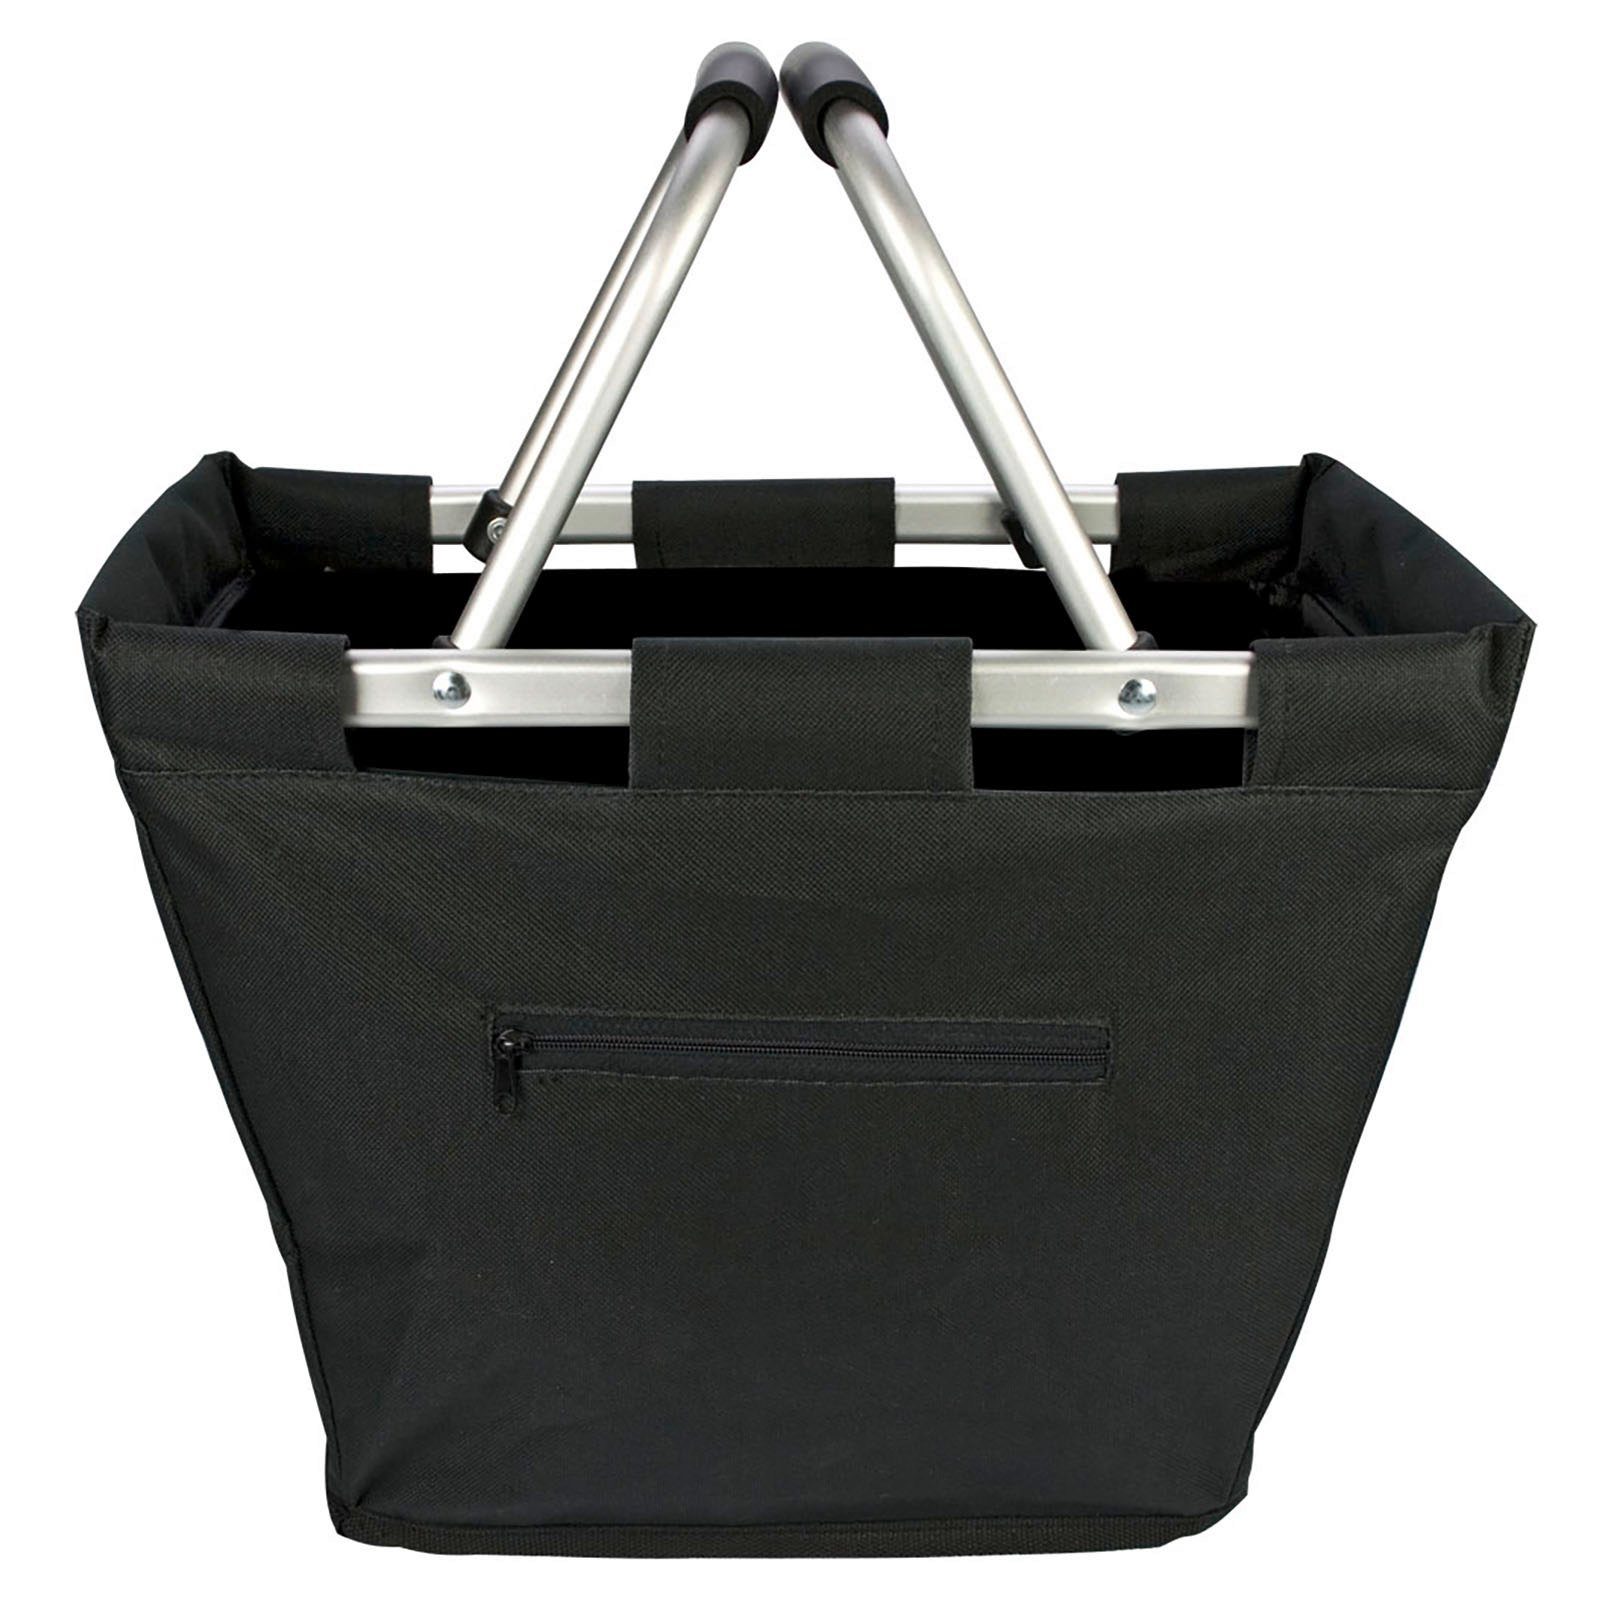 Trendyshop365 Einkaufskorb 2 Shopping Bag, mit ohne Geldfach schwarz 18 l, faltbar, Tragegriffe, Deckel